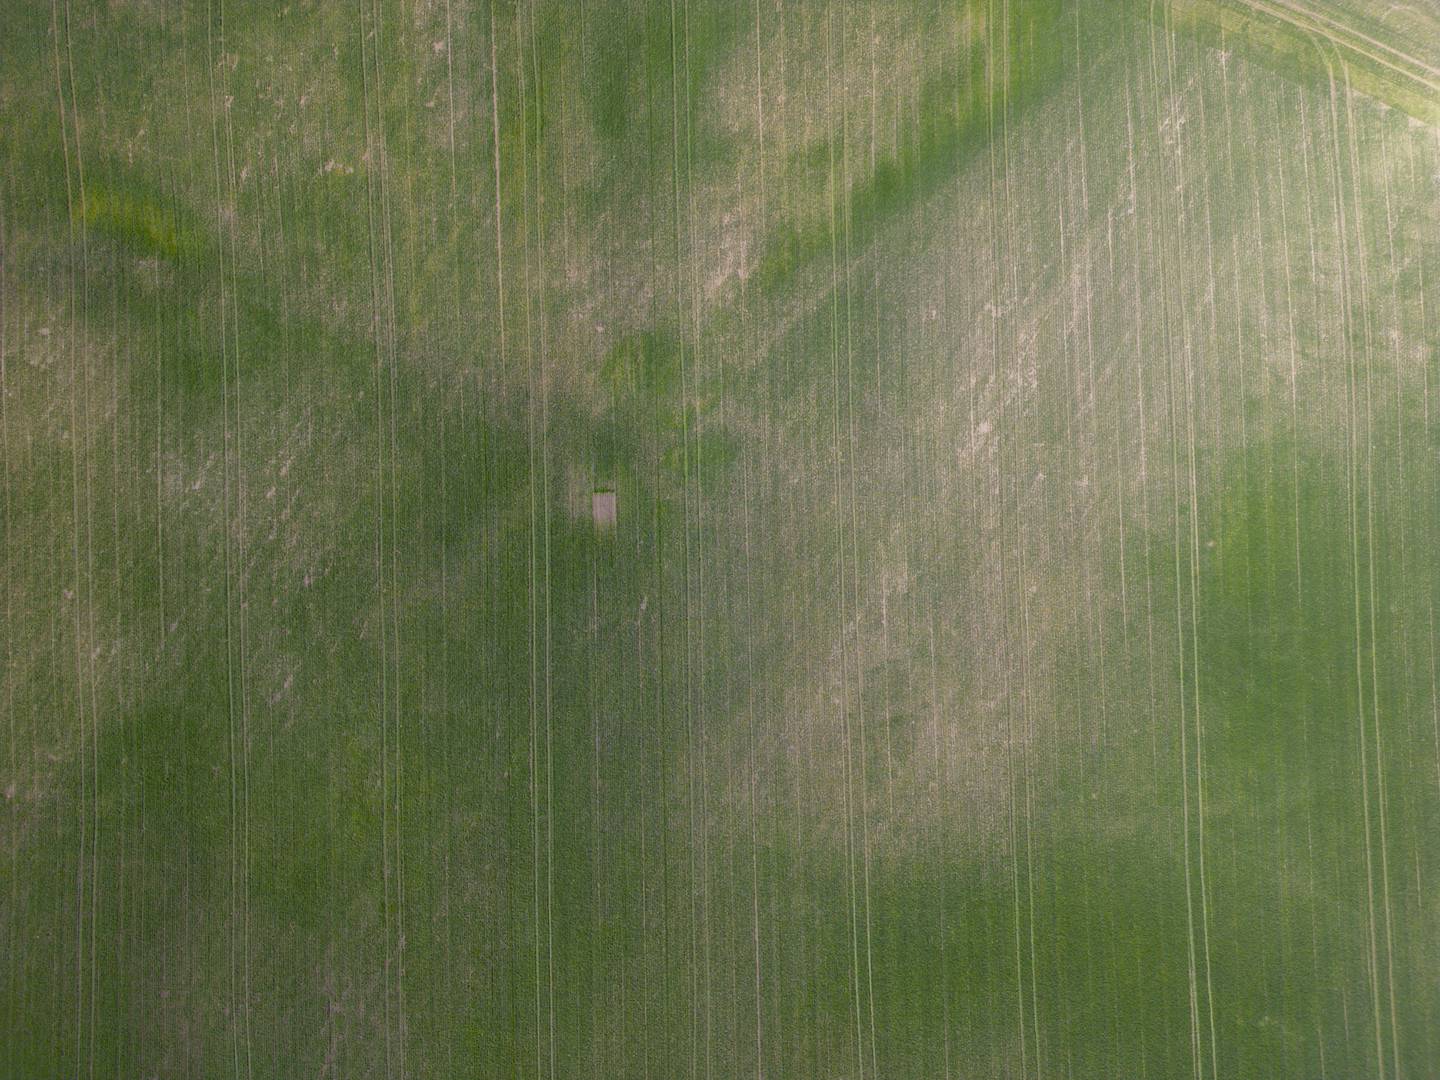 Tørre jorder i landbruksområdet i Stange på Hedemarken.